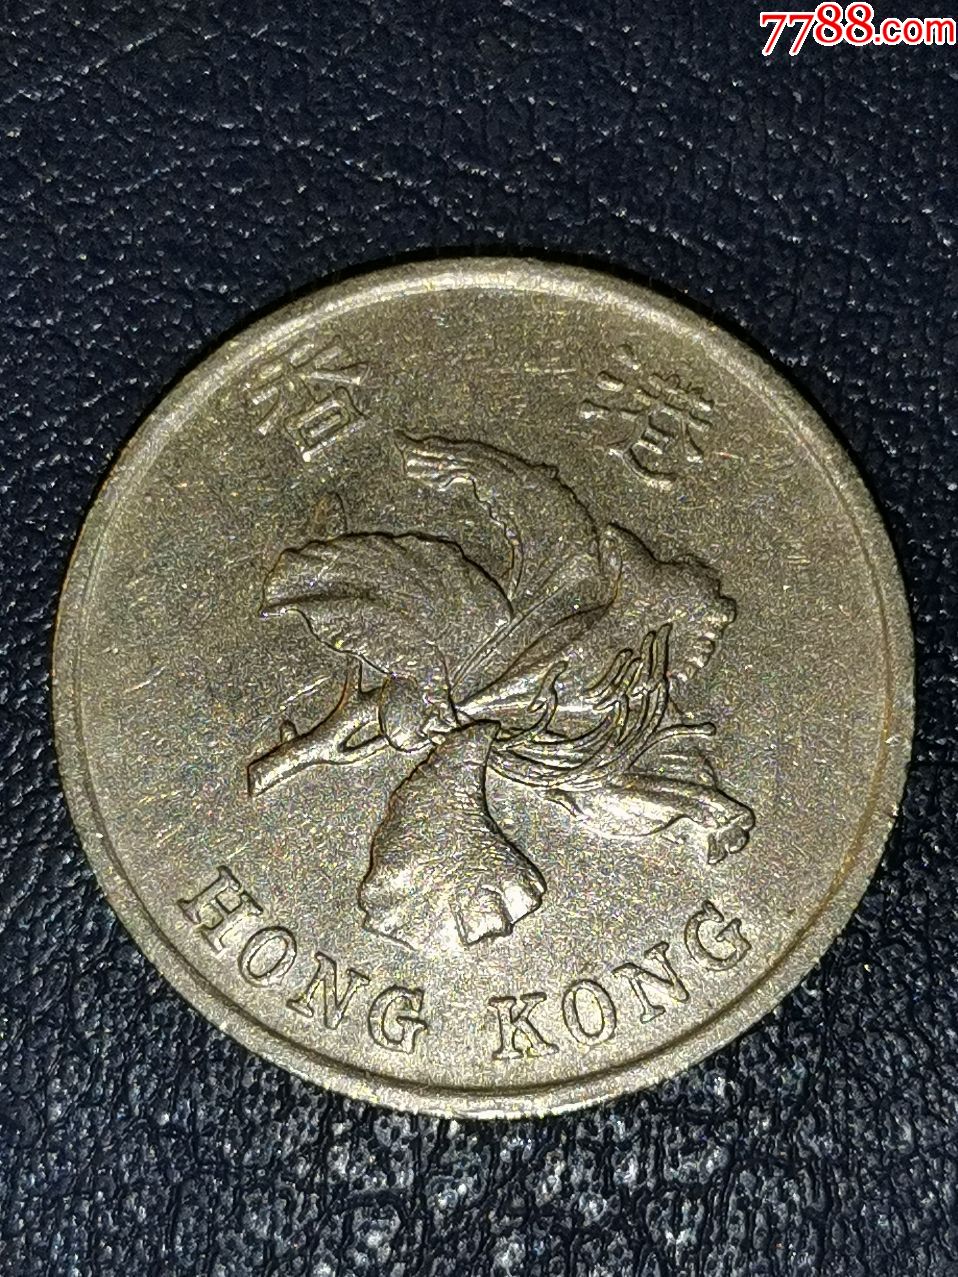 香港1998年1元